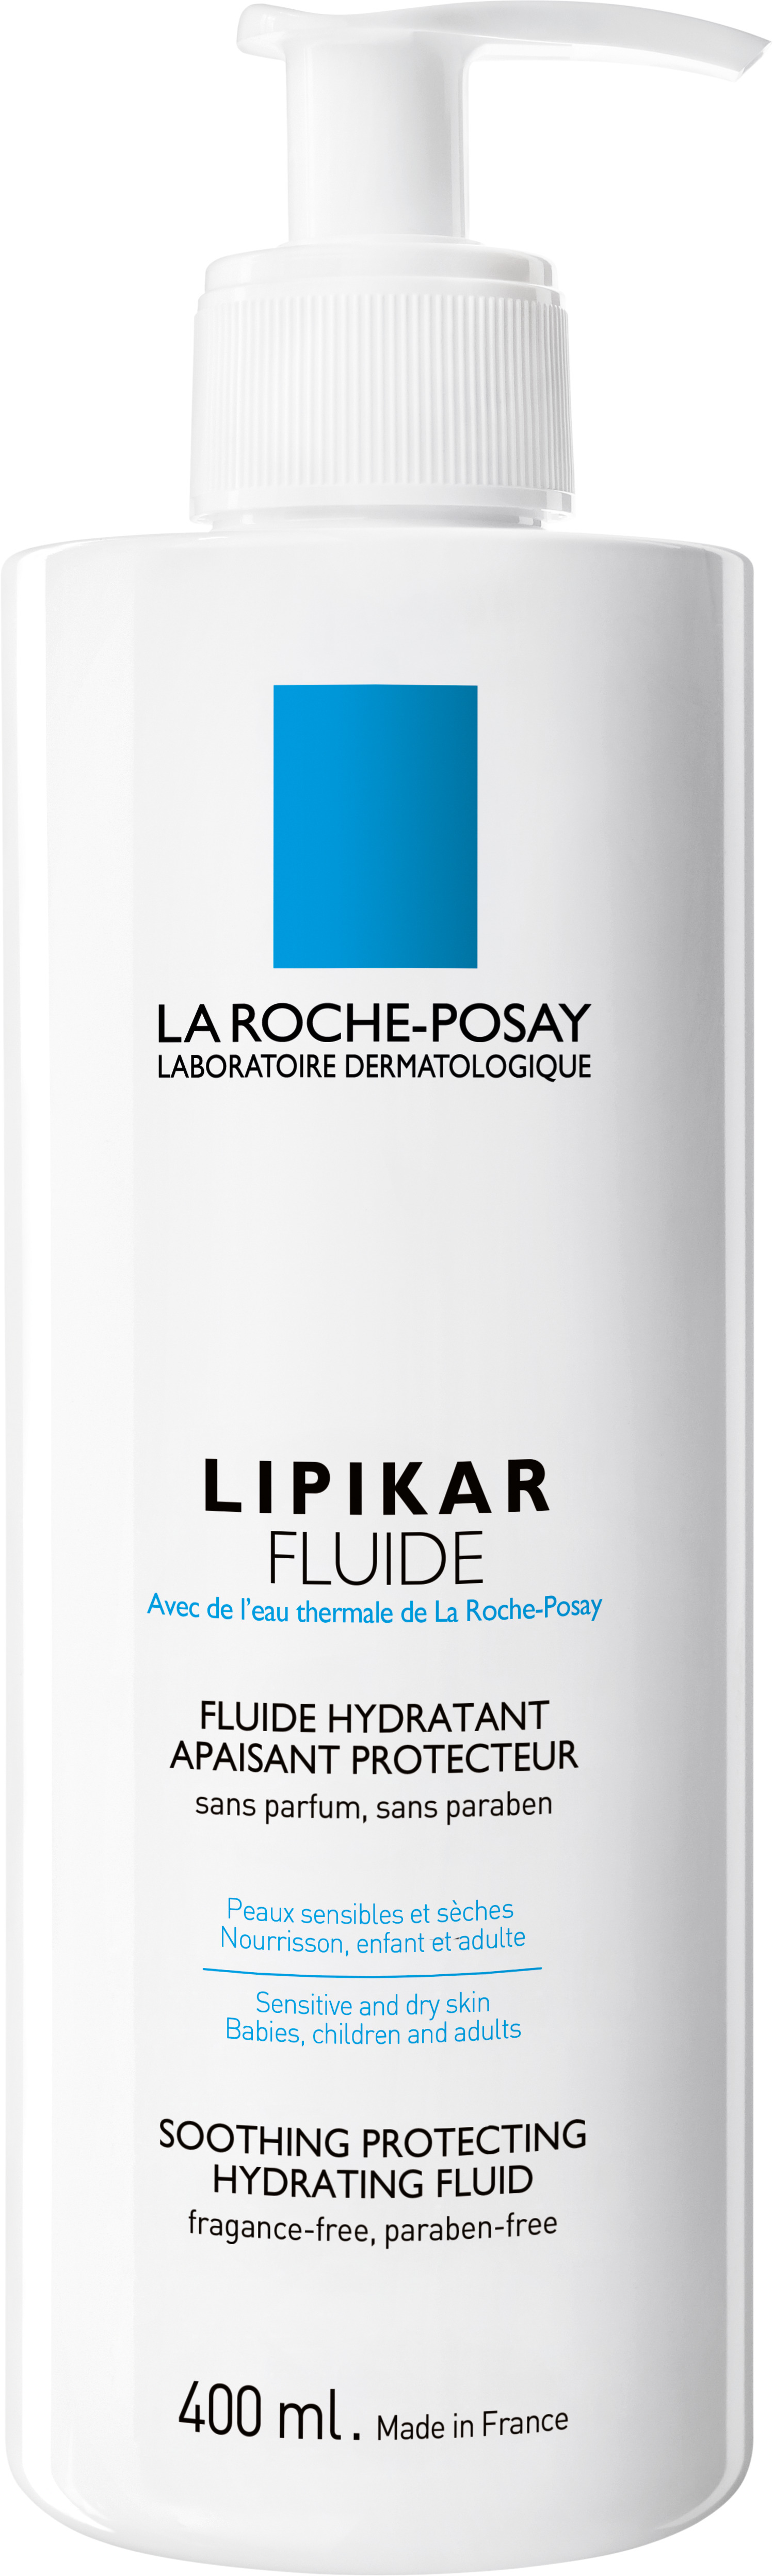 La Roche-Posay Lipikar Fluide Bodylotion 400 ml